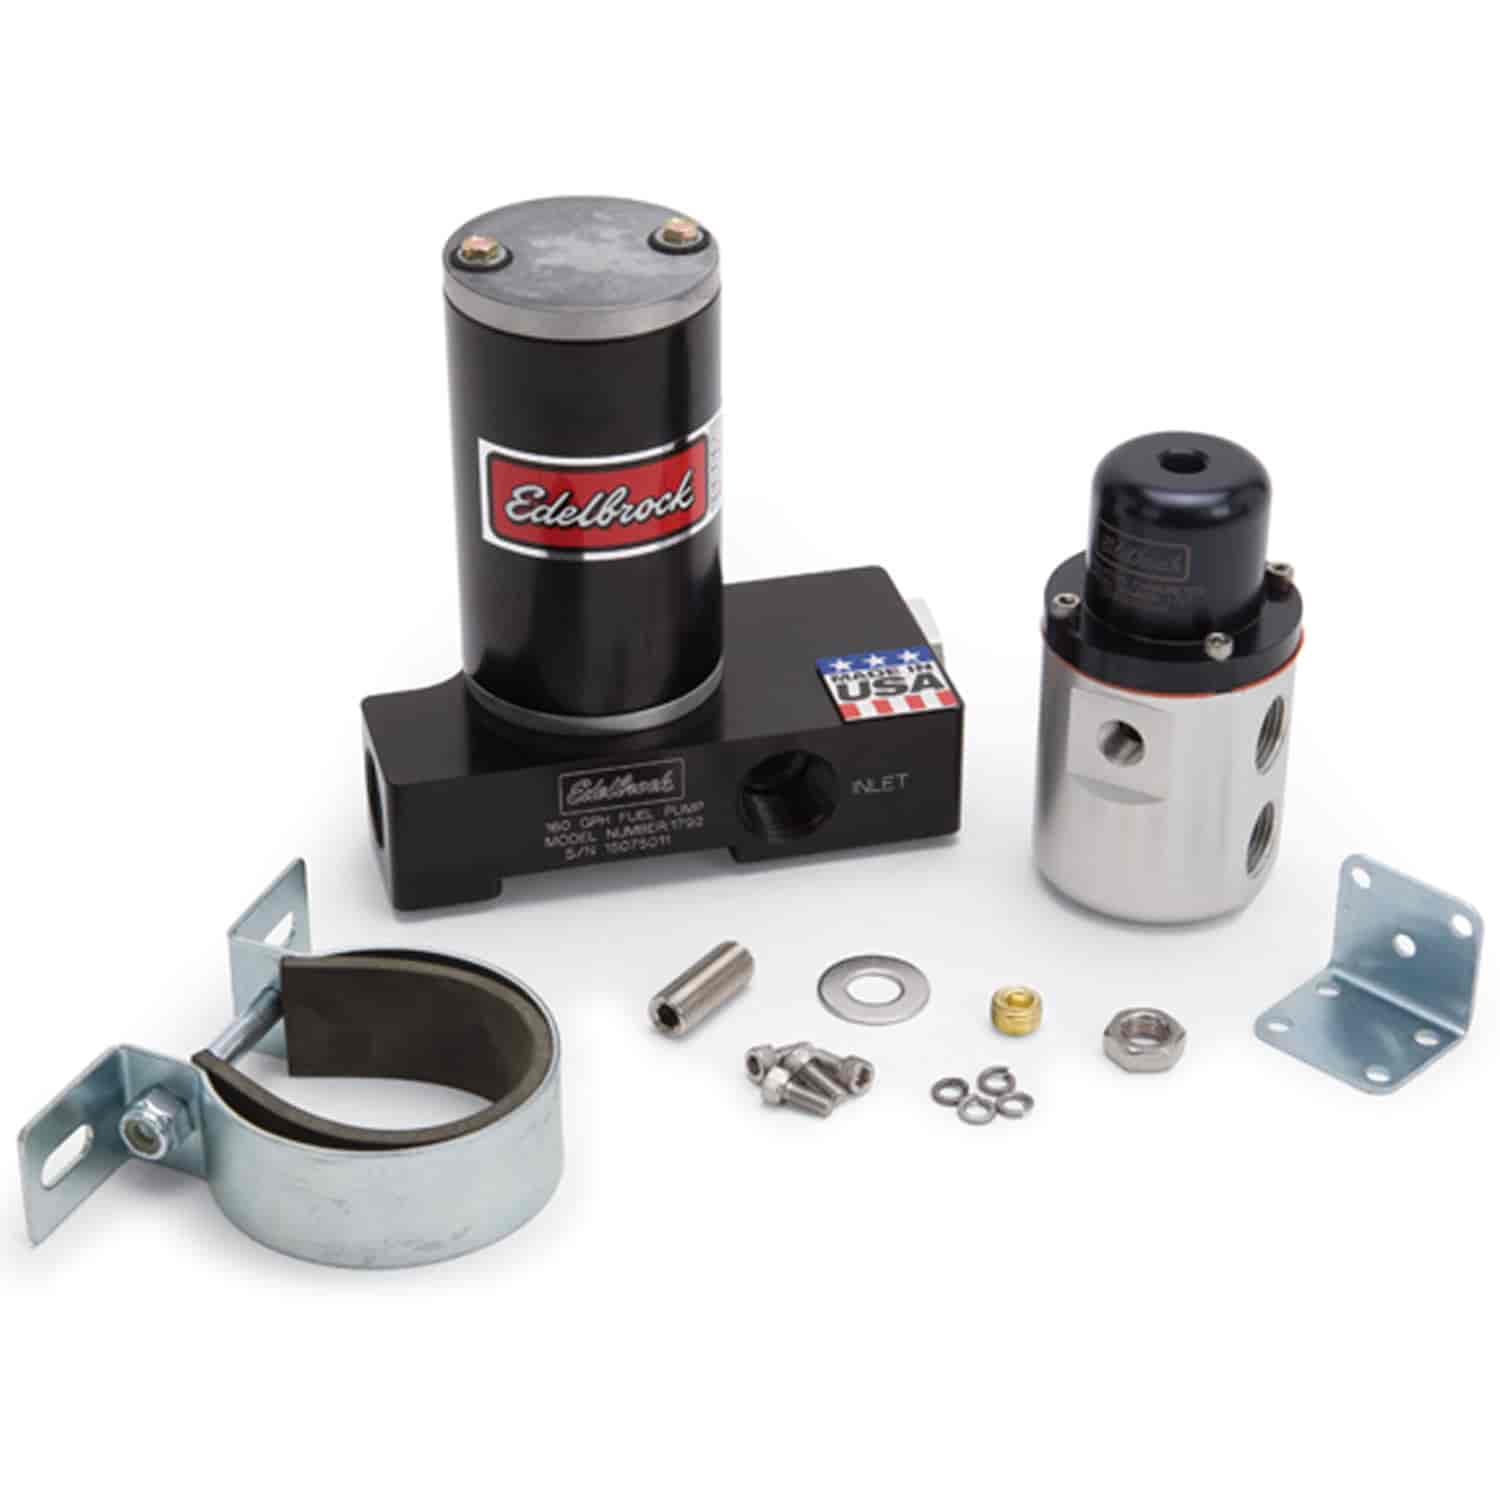 Carbureted Fuel Pump & Regulator Kit 160 gph